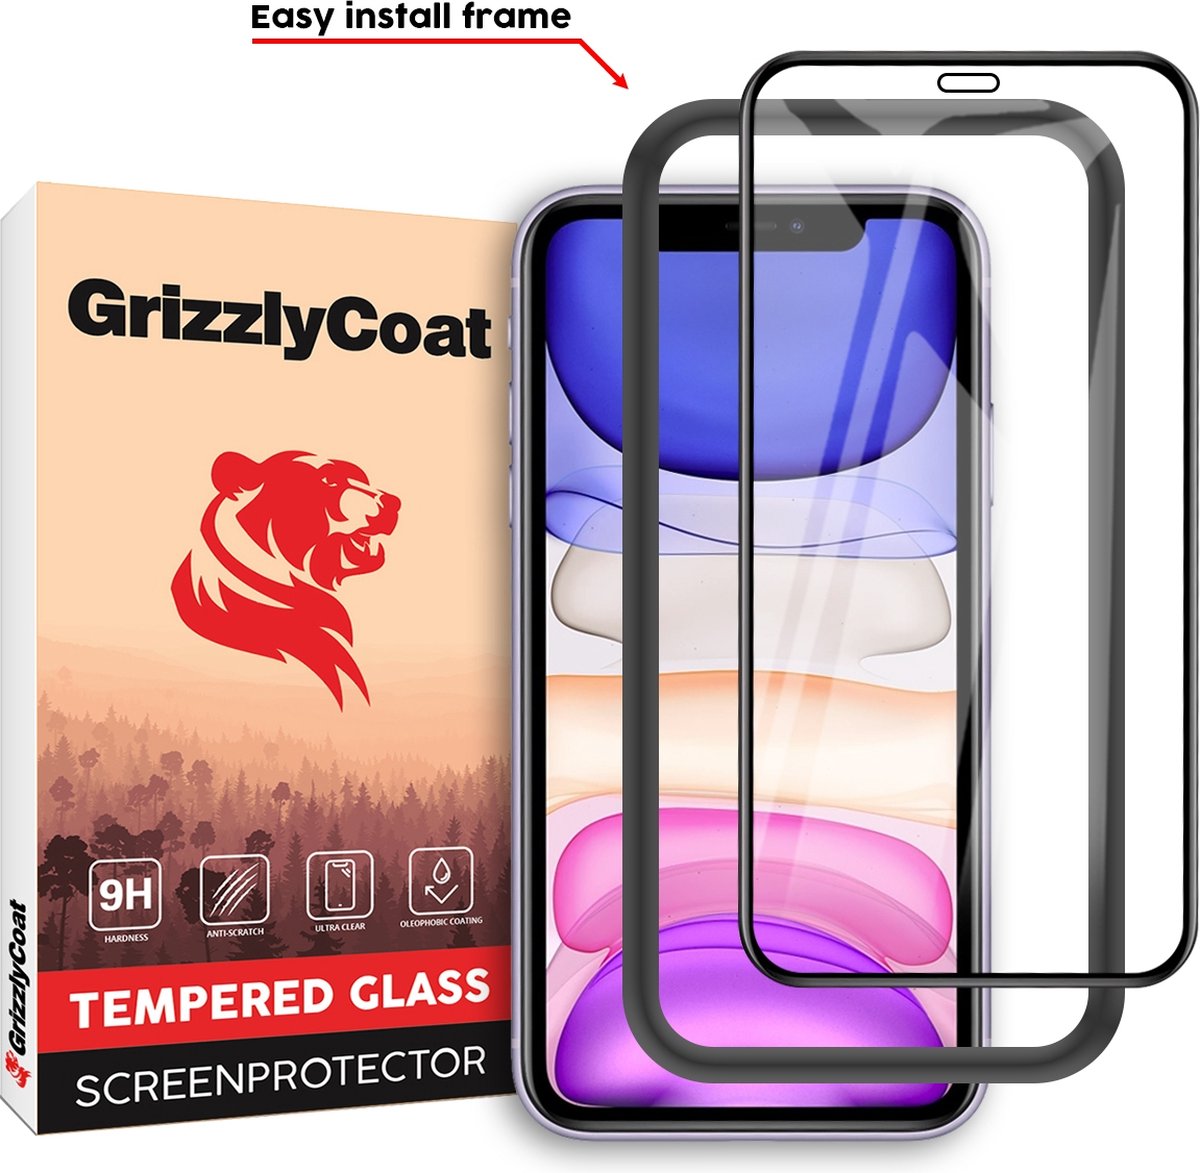 GrizzlyCoat - Screenprotector geschikt voor Apple iPhone XR Glazen | GrizzlyCoat Easy Fit Screenprotector - Case Friendly + Installatie Frame - Zwart